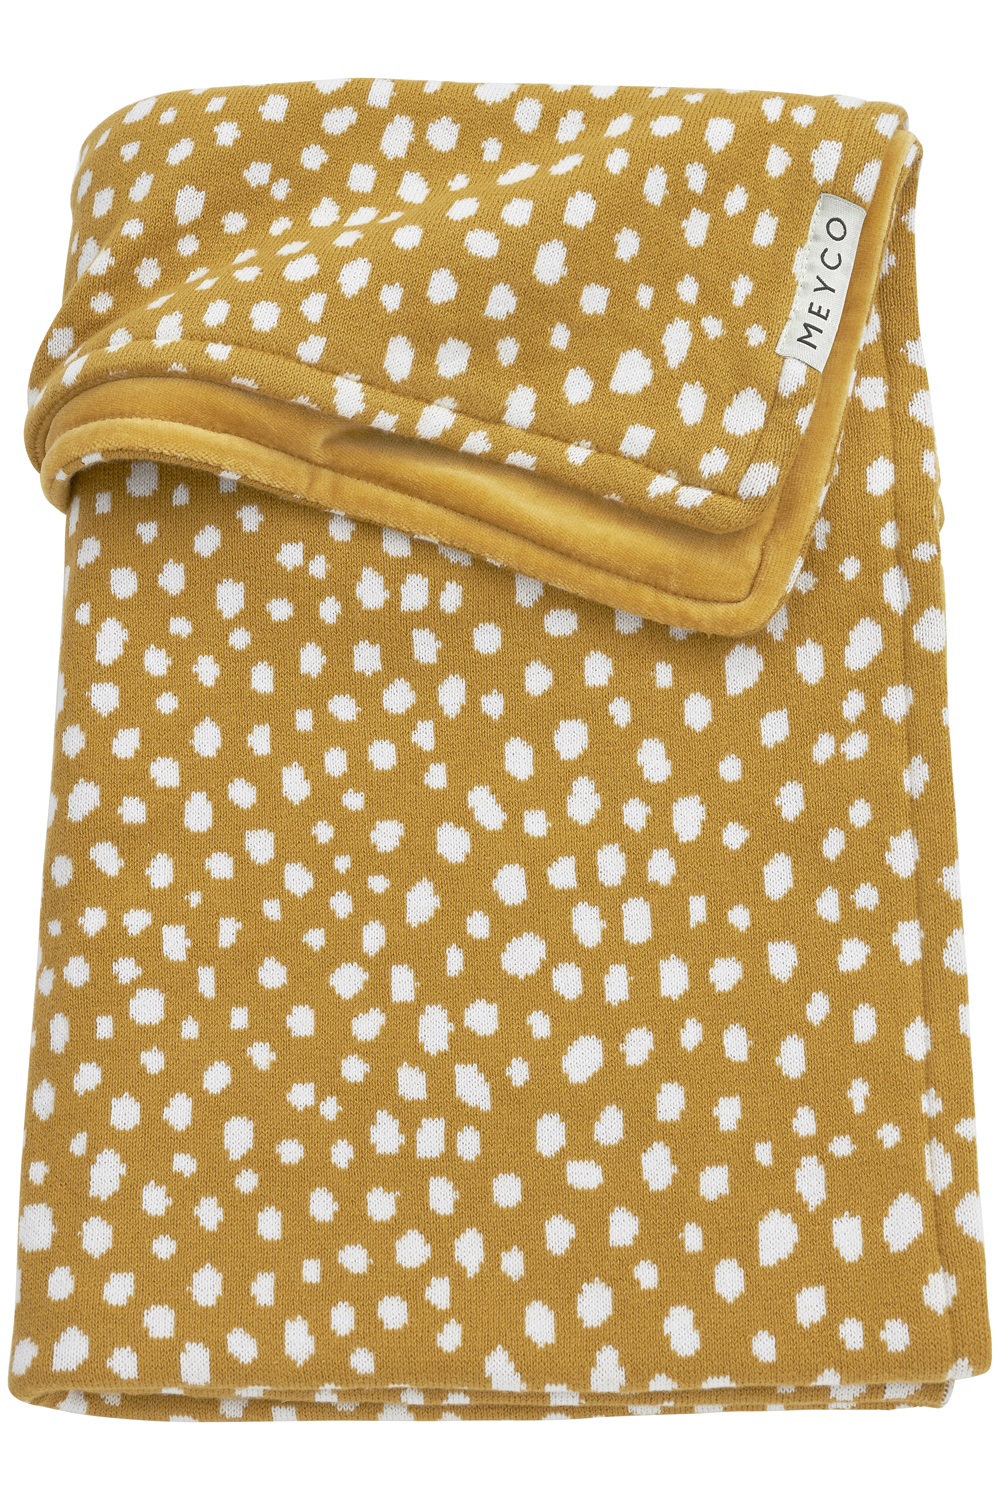 Cot Bed Blanket Velvet Cheetah - Honey Gold - 100x150cm